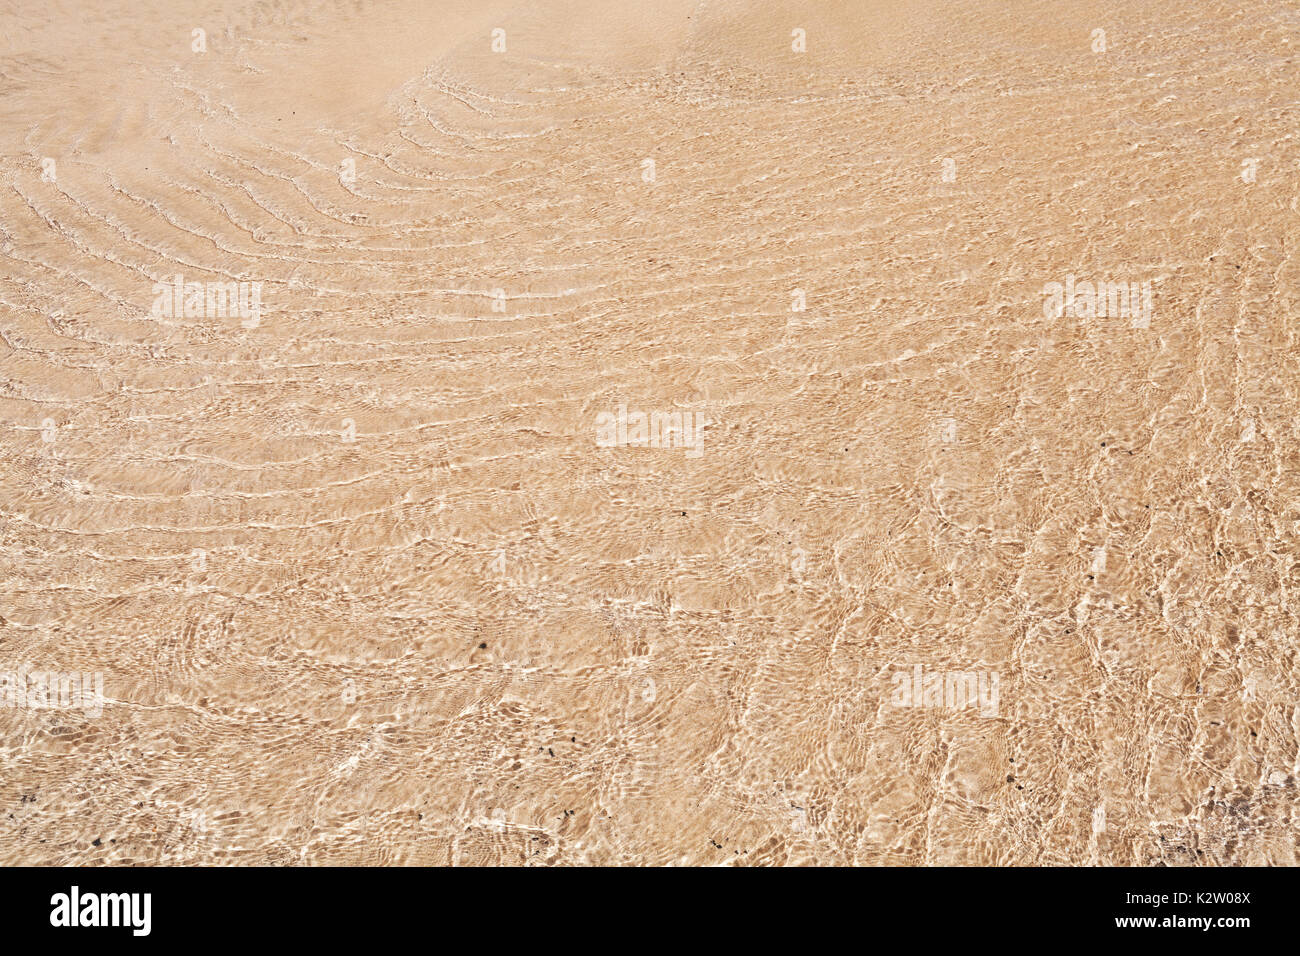 La costa del Océano Atlántico, textura de fondo arena bajo rizado superficial de agua Foto de stock